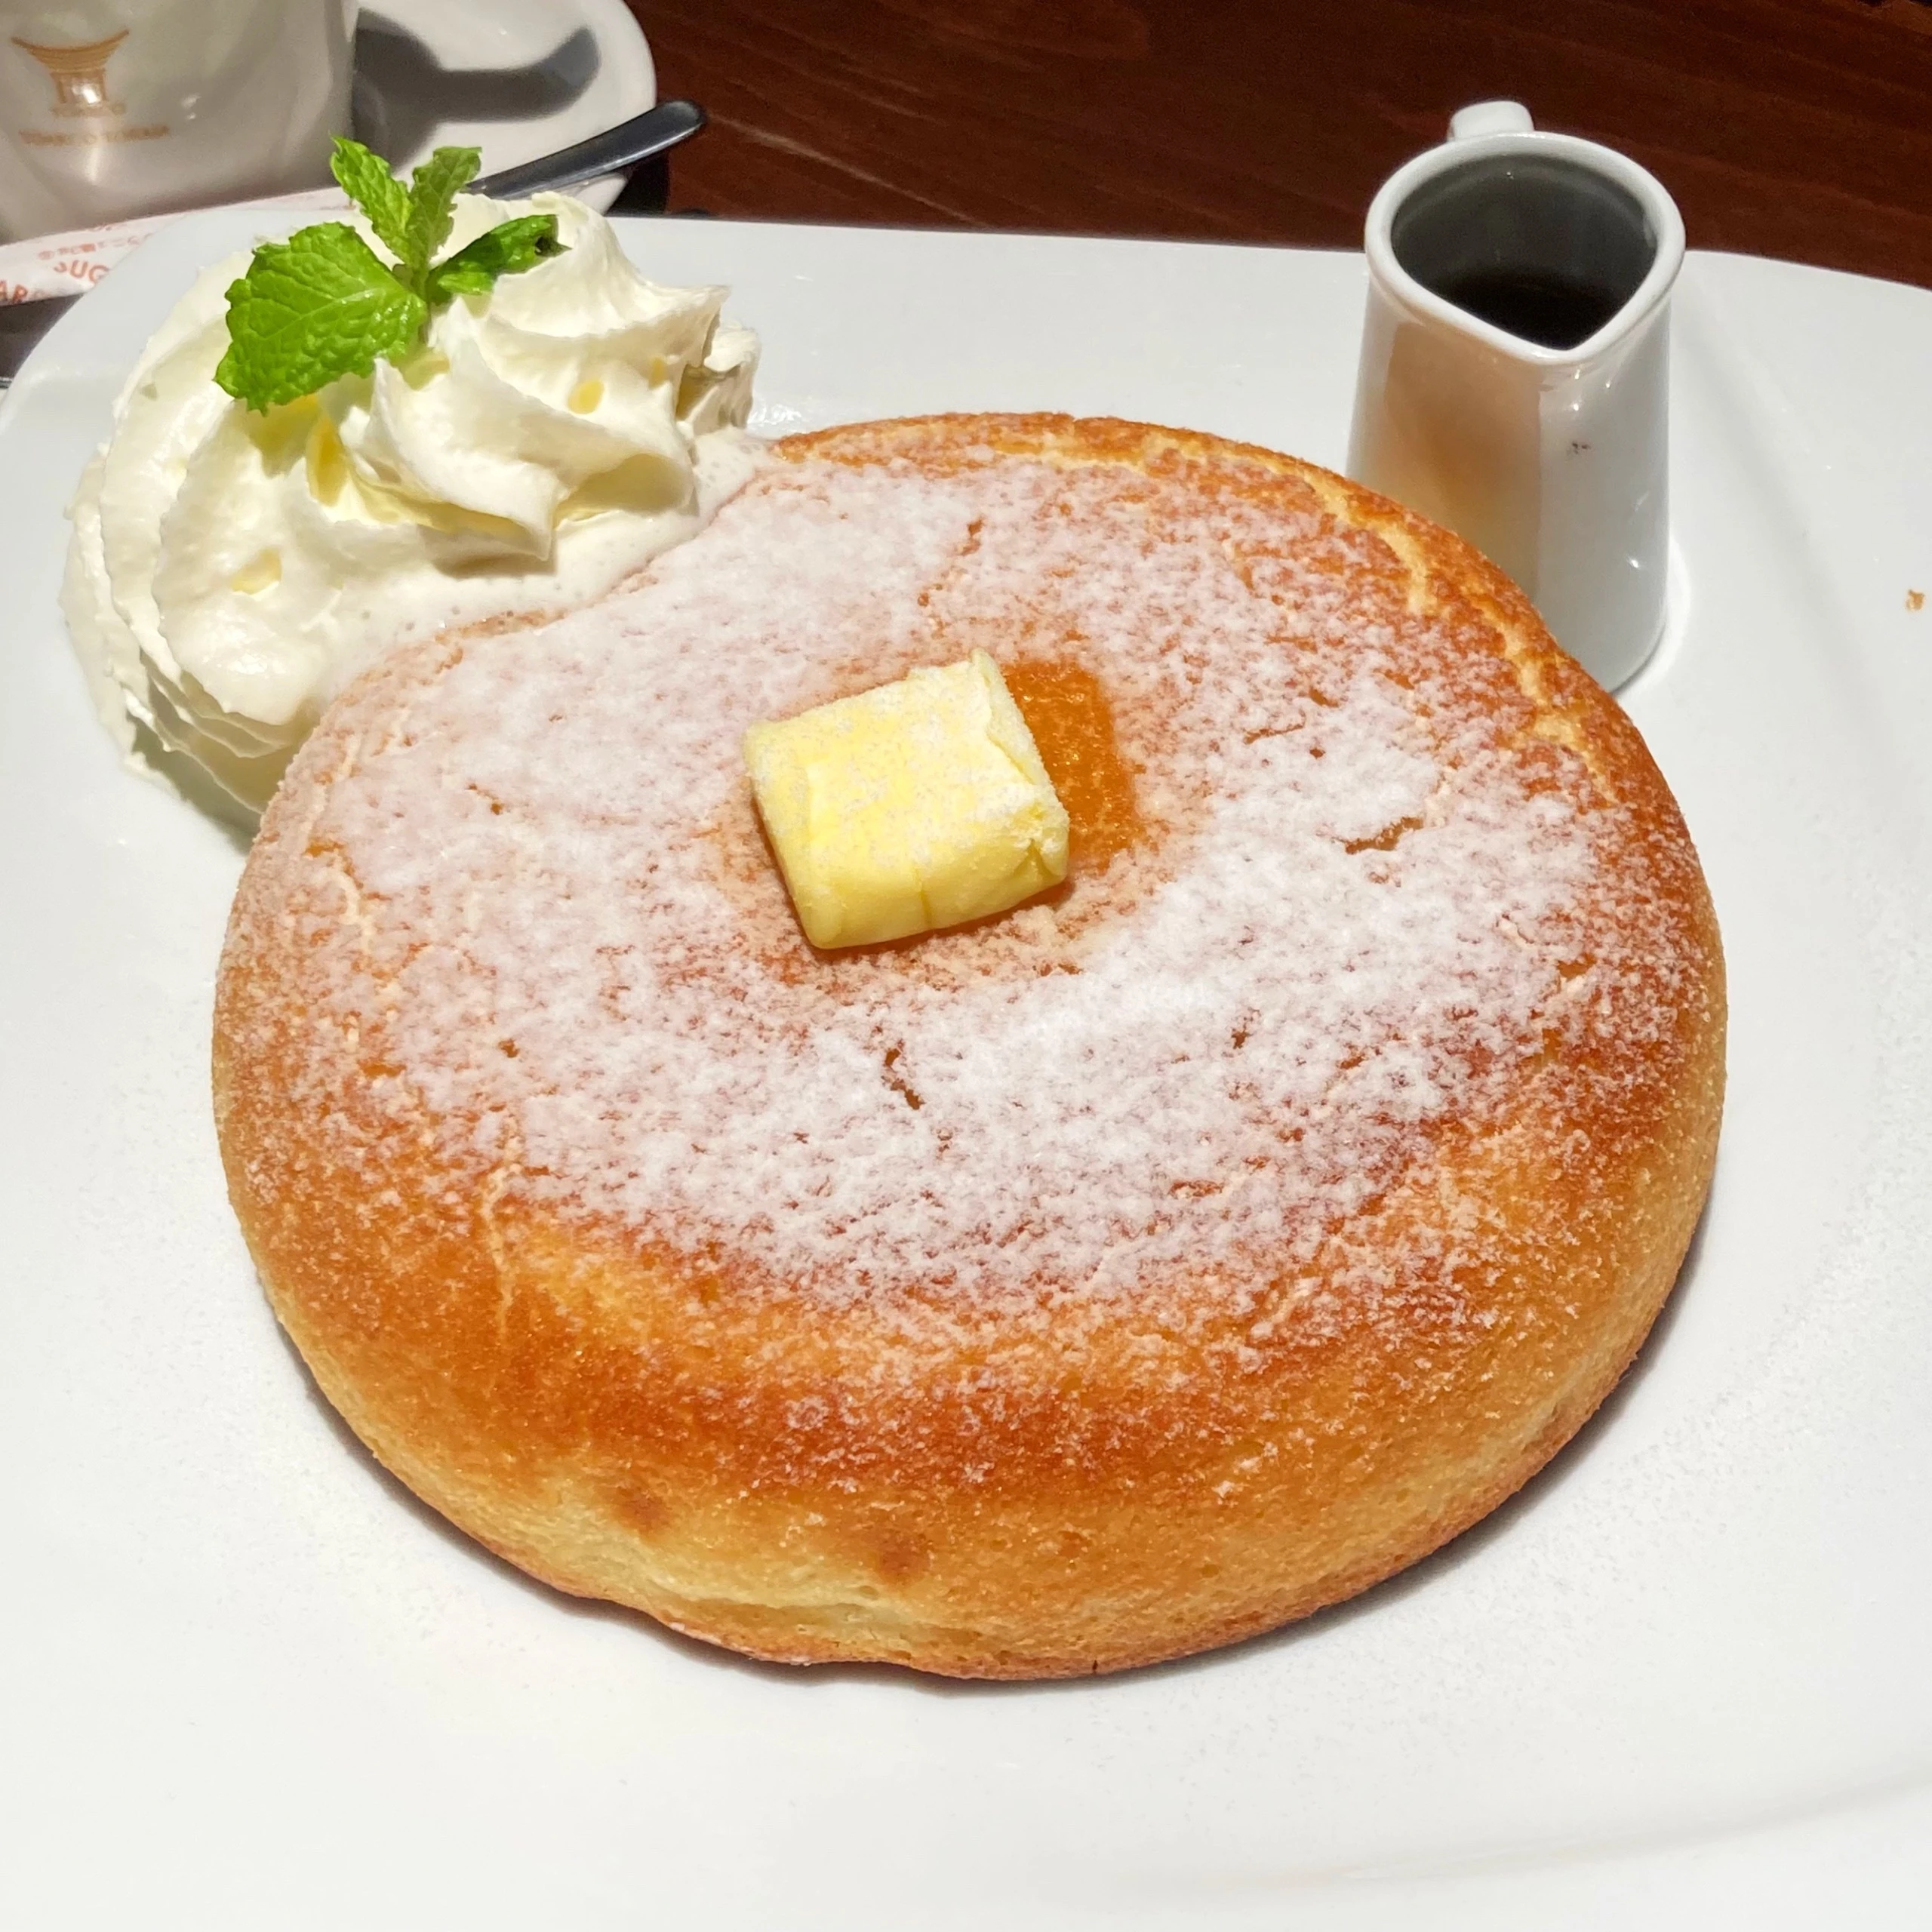 『石釜 bake bread 茶房 TAM TAM』石釜焼きホットケーキ。